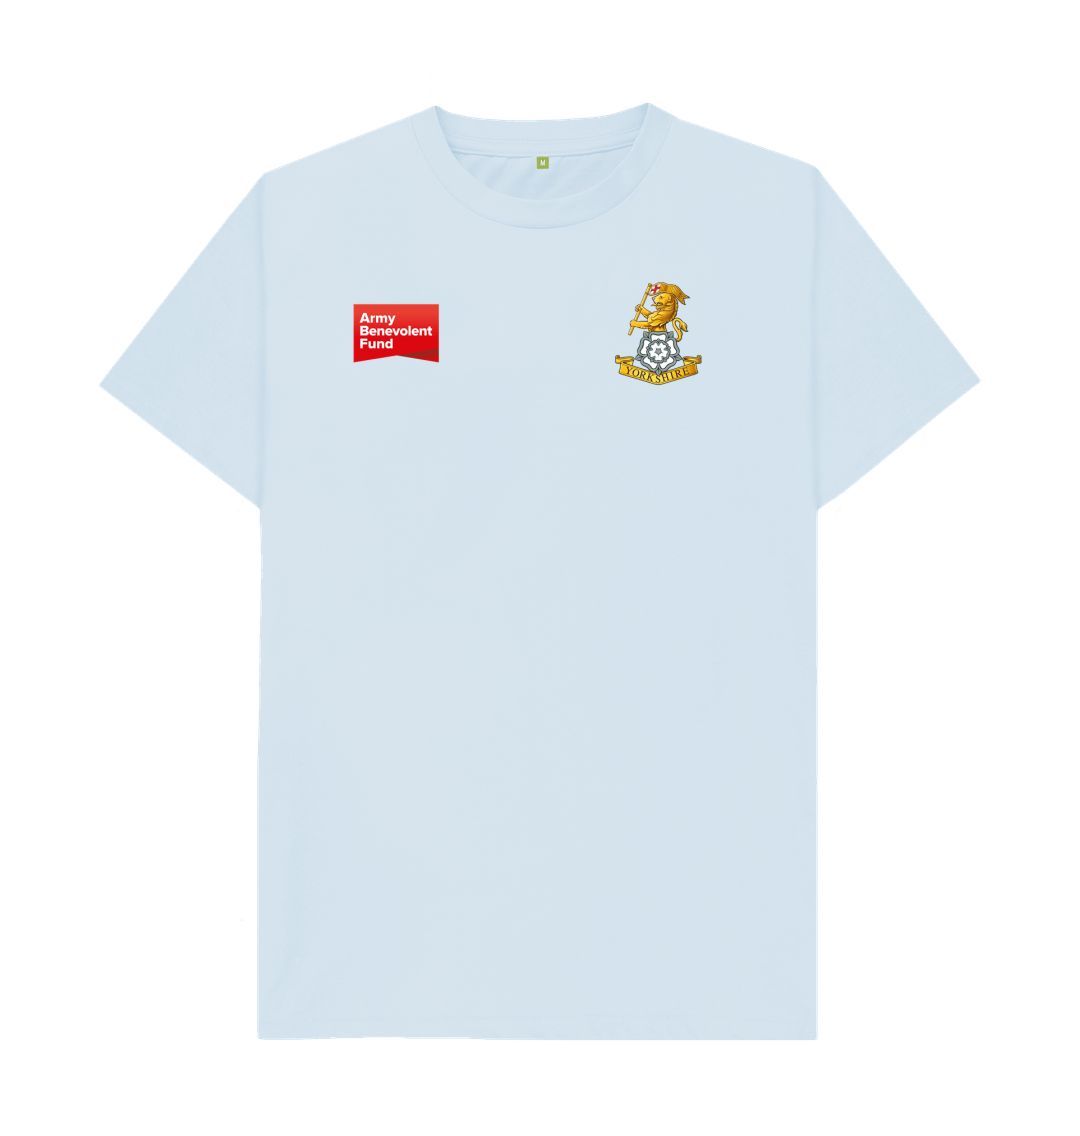 The Yorkshire Regiment Unisex T-shirt - Army Benevolent Fund